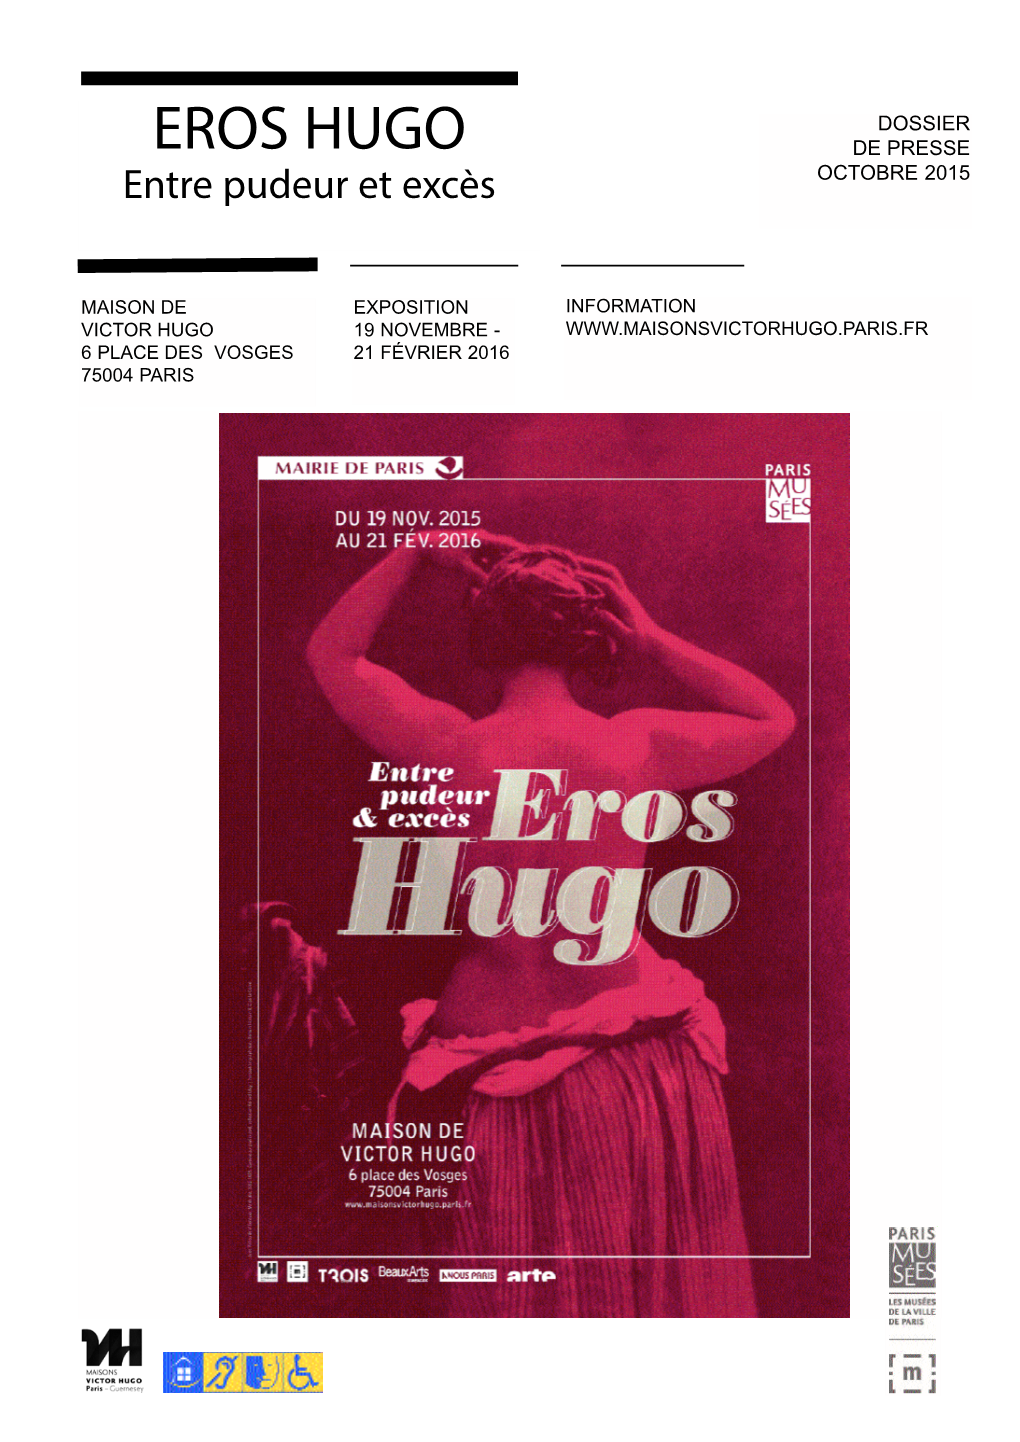 EROS HUGO DE PRESSE Entre Pudeur Et Excès OCTOBRE 2015